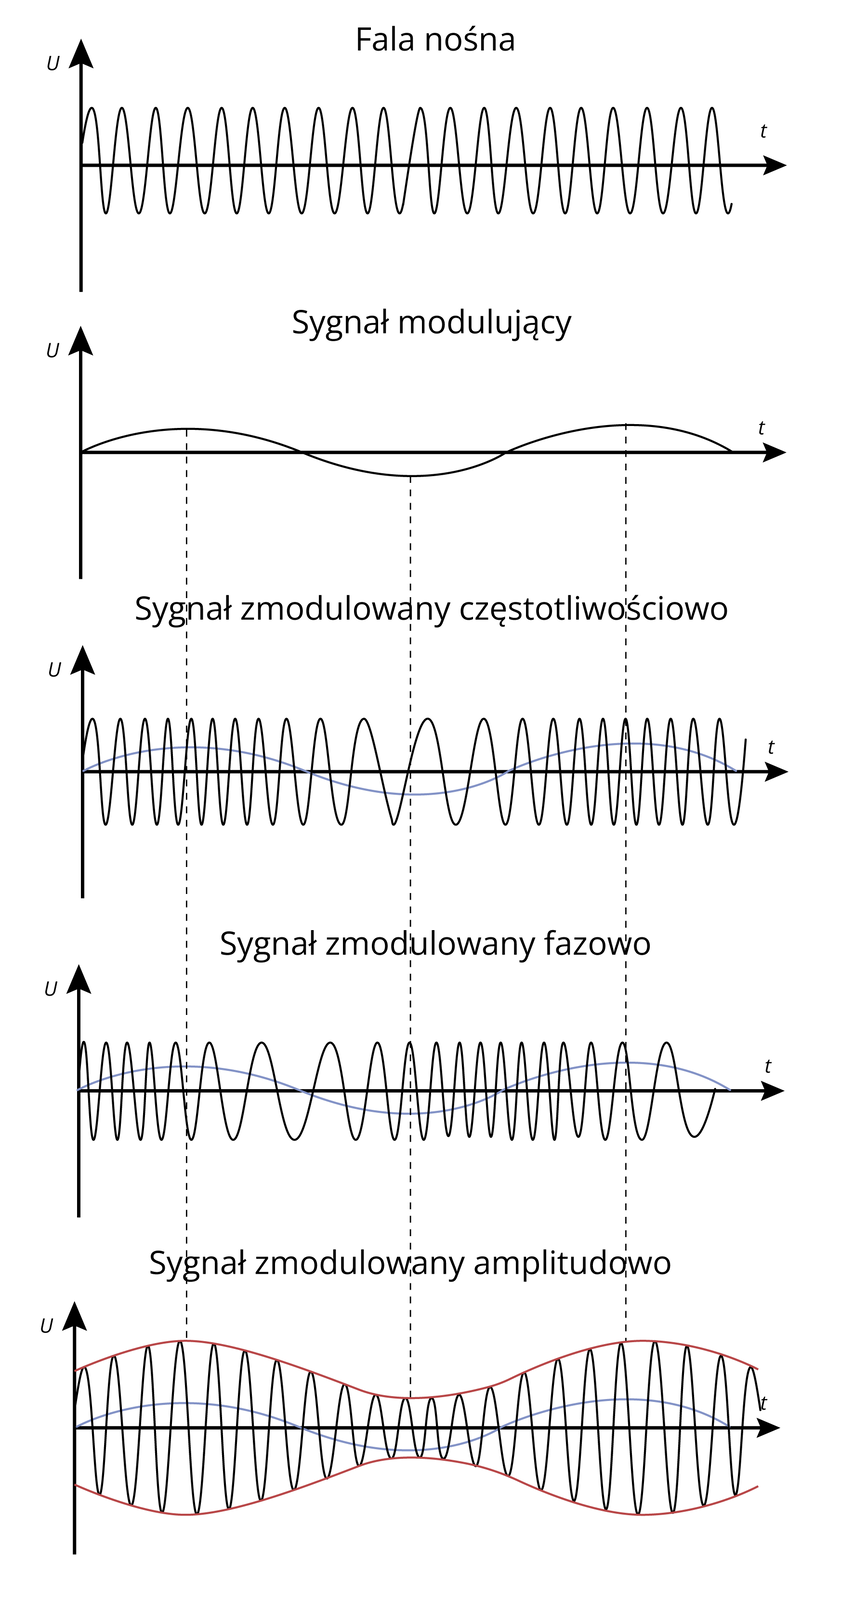 Rys. 10.1 Przebiegi w modulacji AM i FM  Ilustracja przedstawia pięć wykresów modulacji fali dźwiękowej. Wszystkie naniesione są na oś współrzędnych. Jedna to u, druga te. Pierwszy to rysunek przedstawiający falę nośną o regularnej okresowej amplitudzie. Kolejny rysunek przedstawia sygnał modulujący. To linia falująca, przecinająca współrzędną w dwóch miejscach. Trzeci rysunek przedstawia sygnał zmodulowany częściowo. Przy niezmiennej amplitudzie zmieniła się częstotliwość sygnału w  środku wykresu. Na kolejnym rysunku sygnał zmodulowany jest fazowo. Jego częstotliwość zmienia się w określonych odcinkach. Ostatni rysunek przedstawia sygnał, którego zmienna amplituda wpływa na  kształt fali. Jest ona węższa w odcinku środkowym.